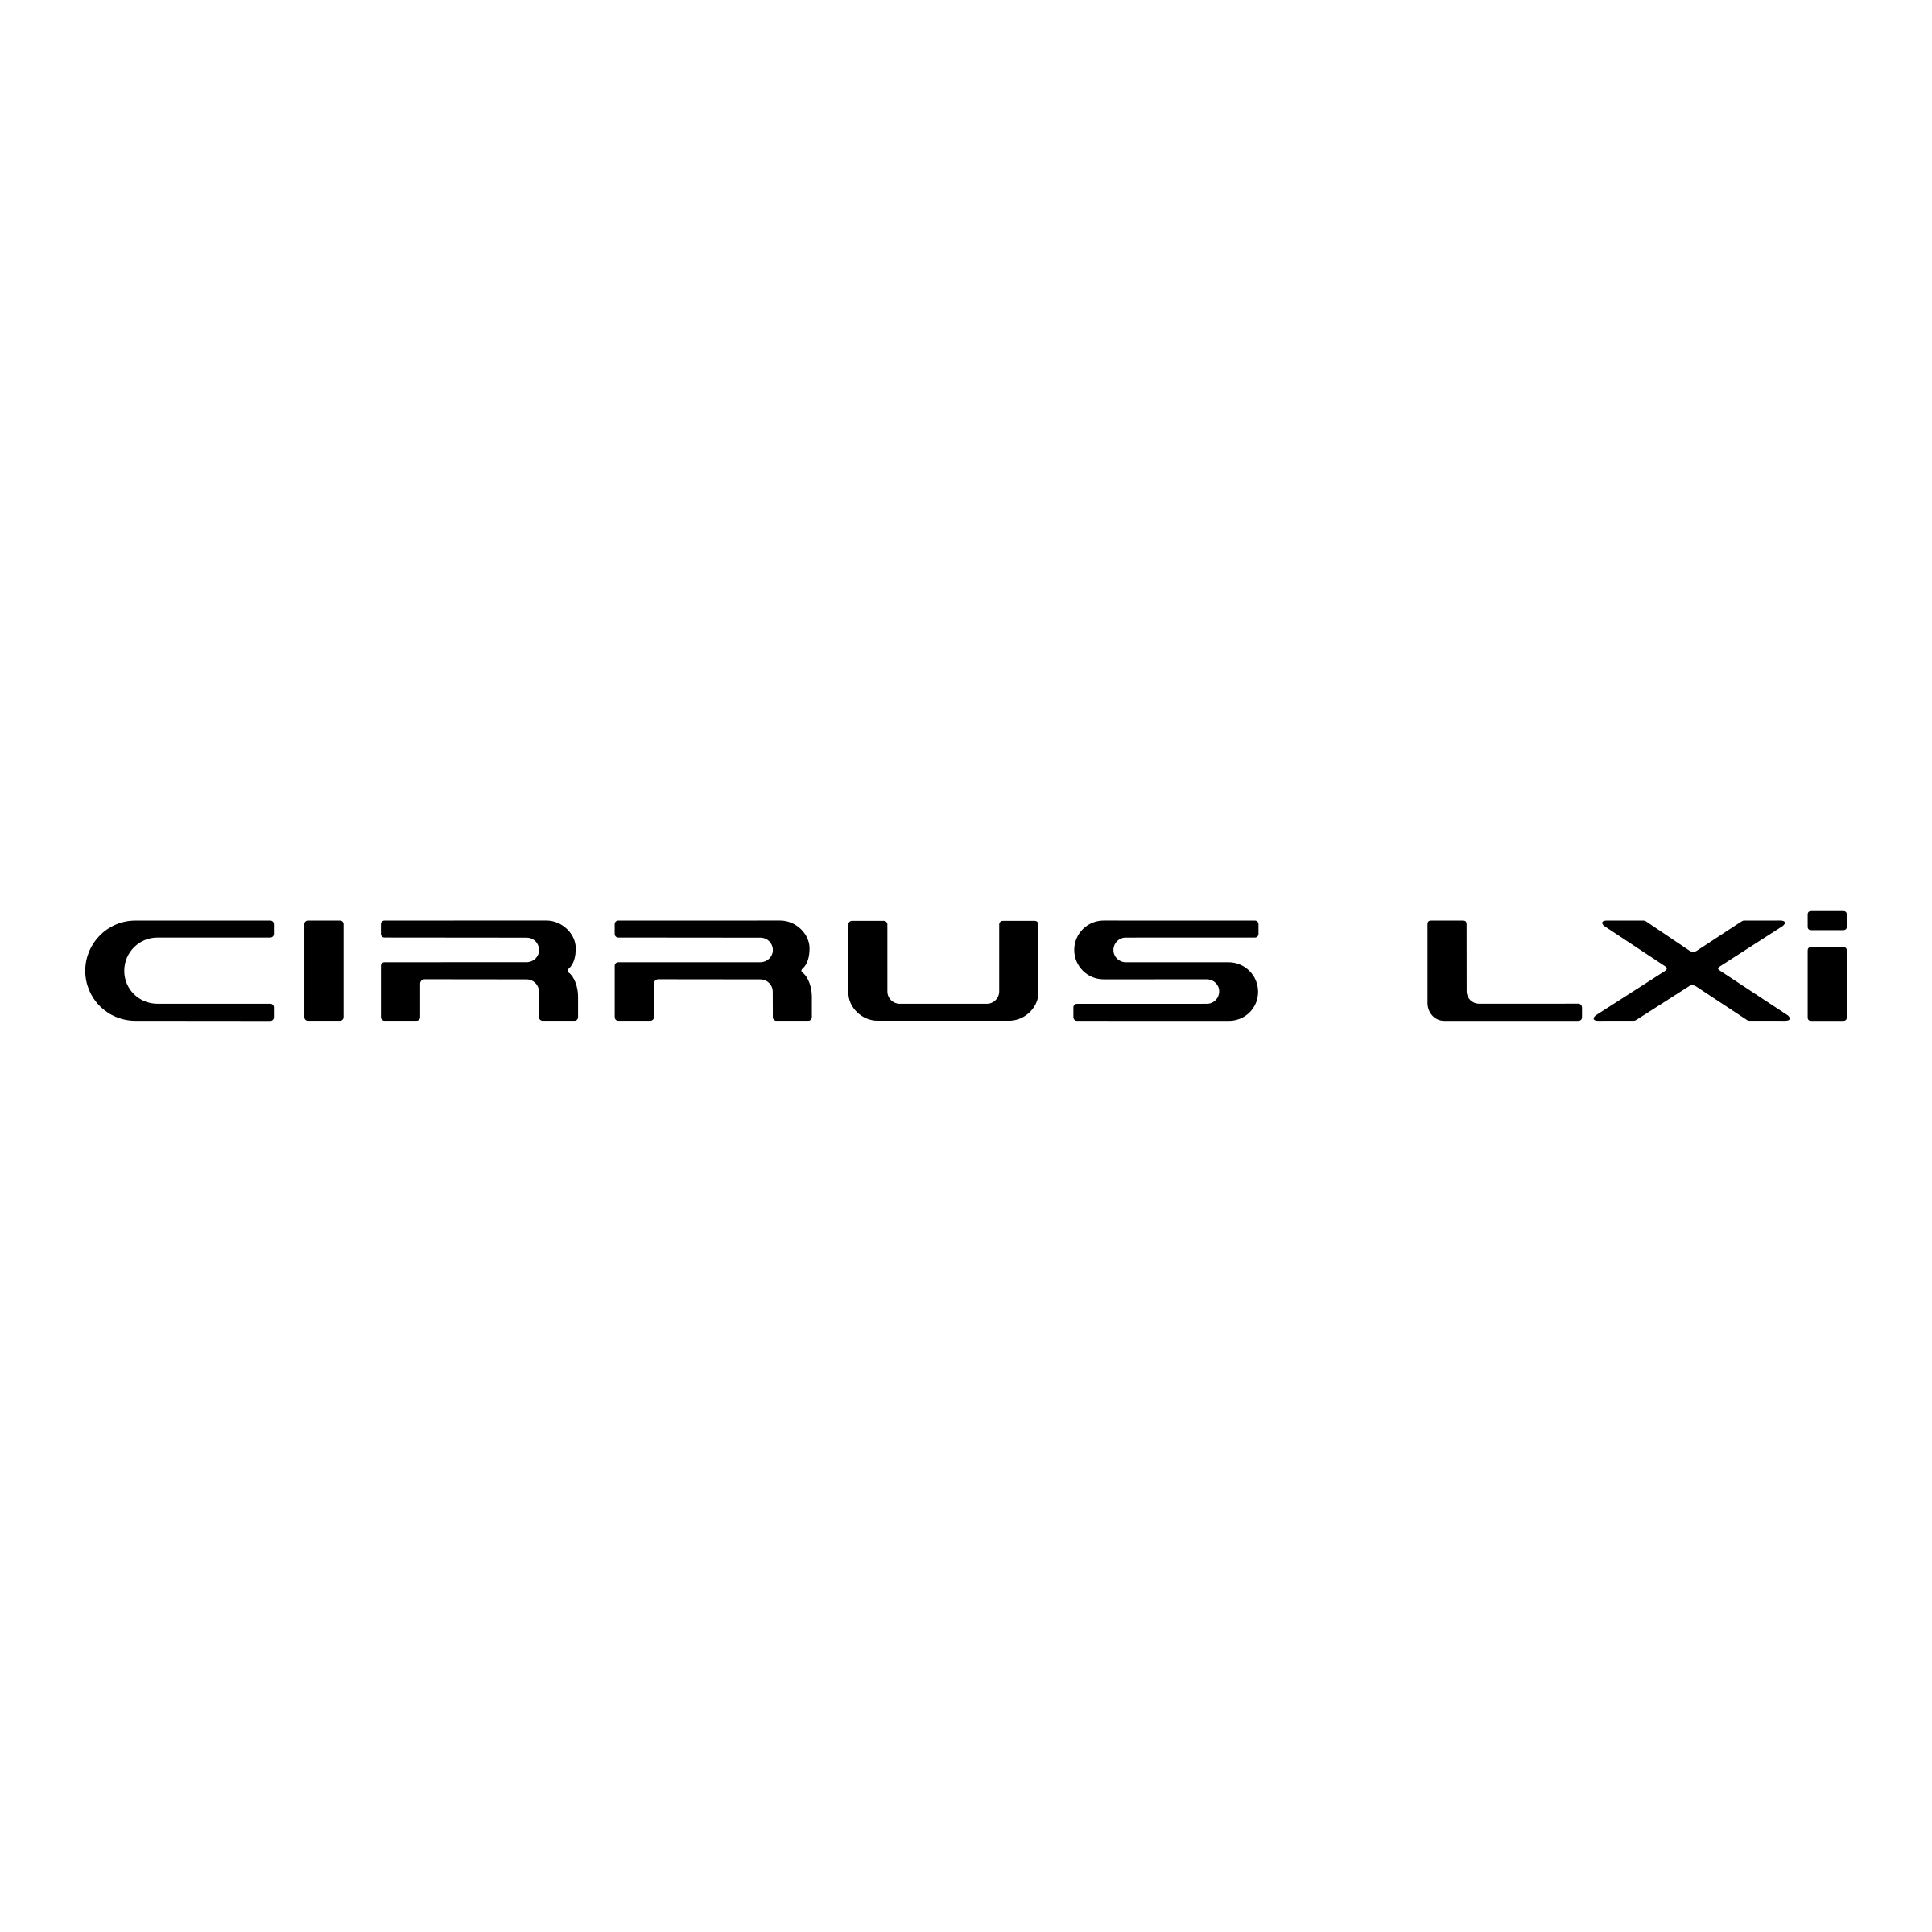 LXI Logo - Cirrus LXi Logo PNG Transparent & SVG Vector